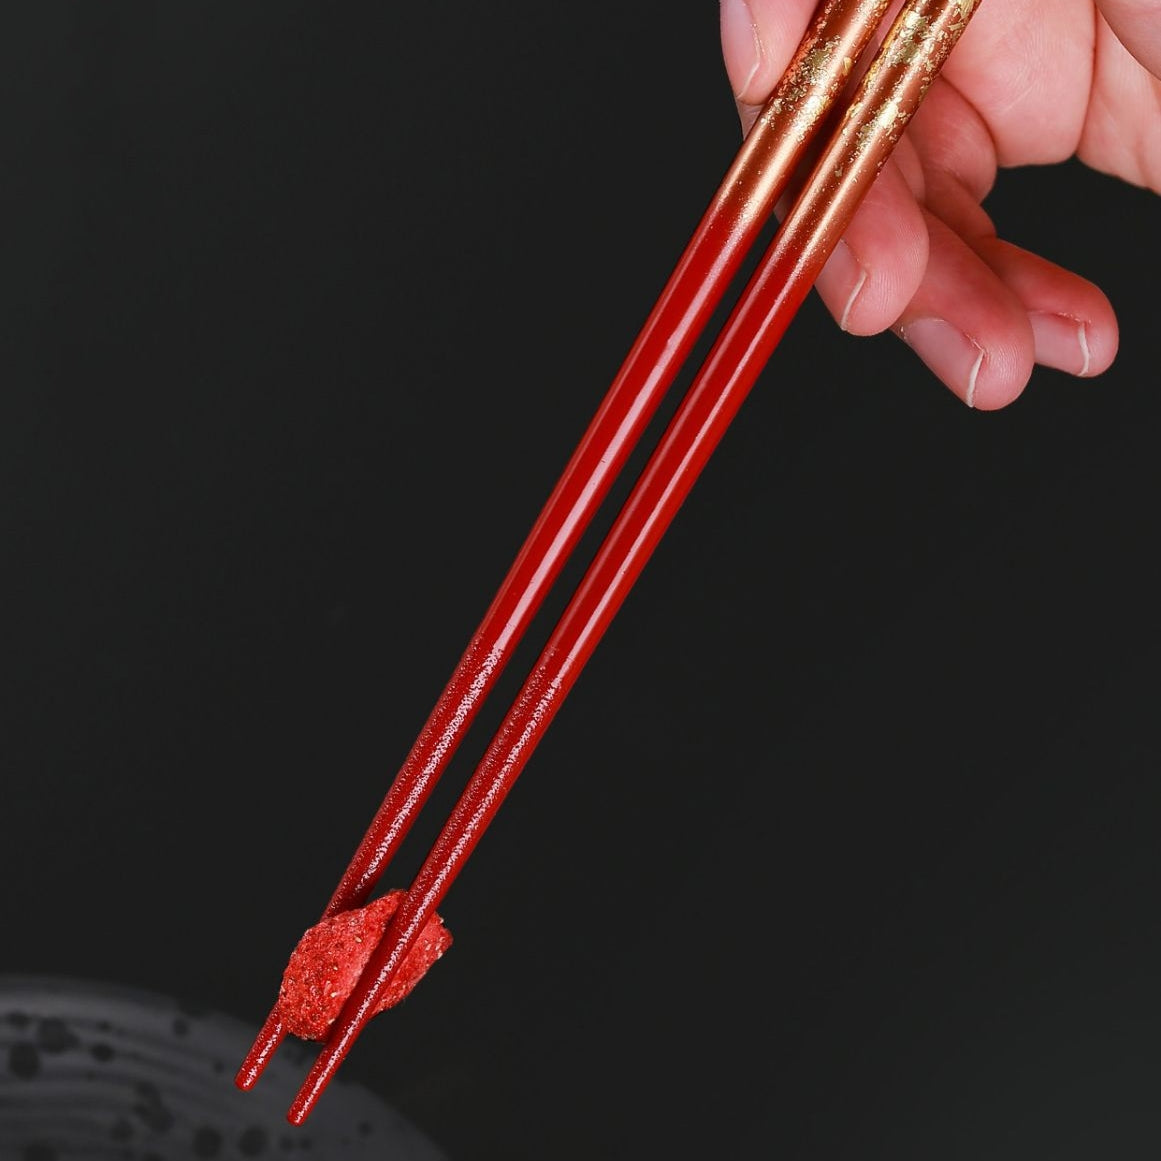 ISSOU Auspicious Clouds Japanese Handcrafted Wooden Chopsticks Wedding Gift Set